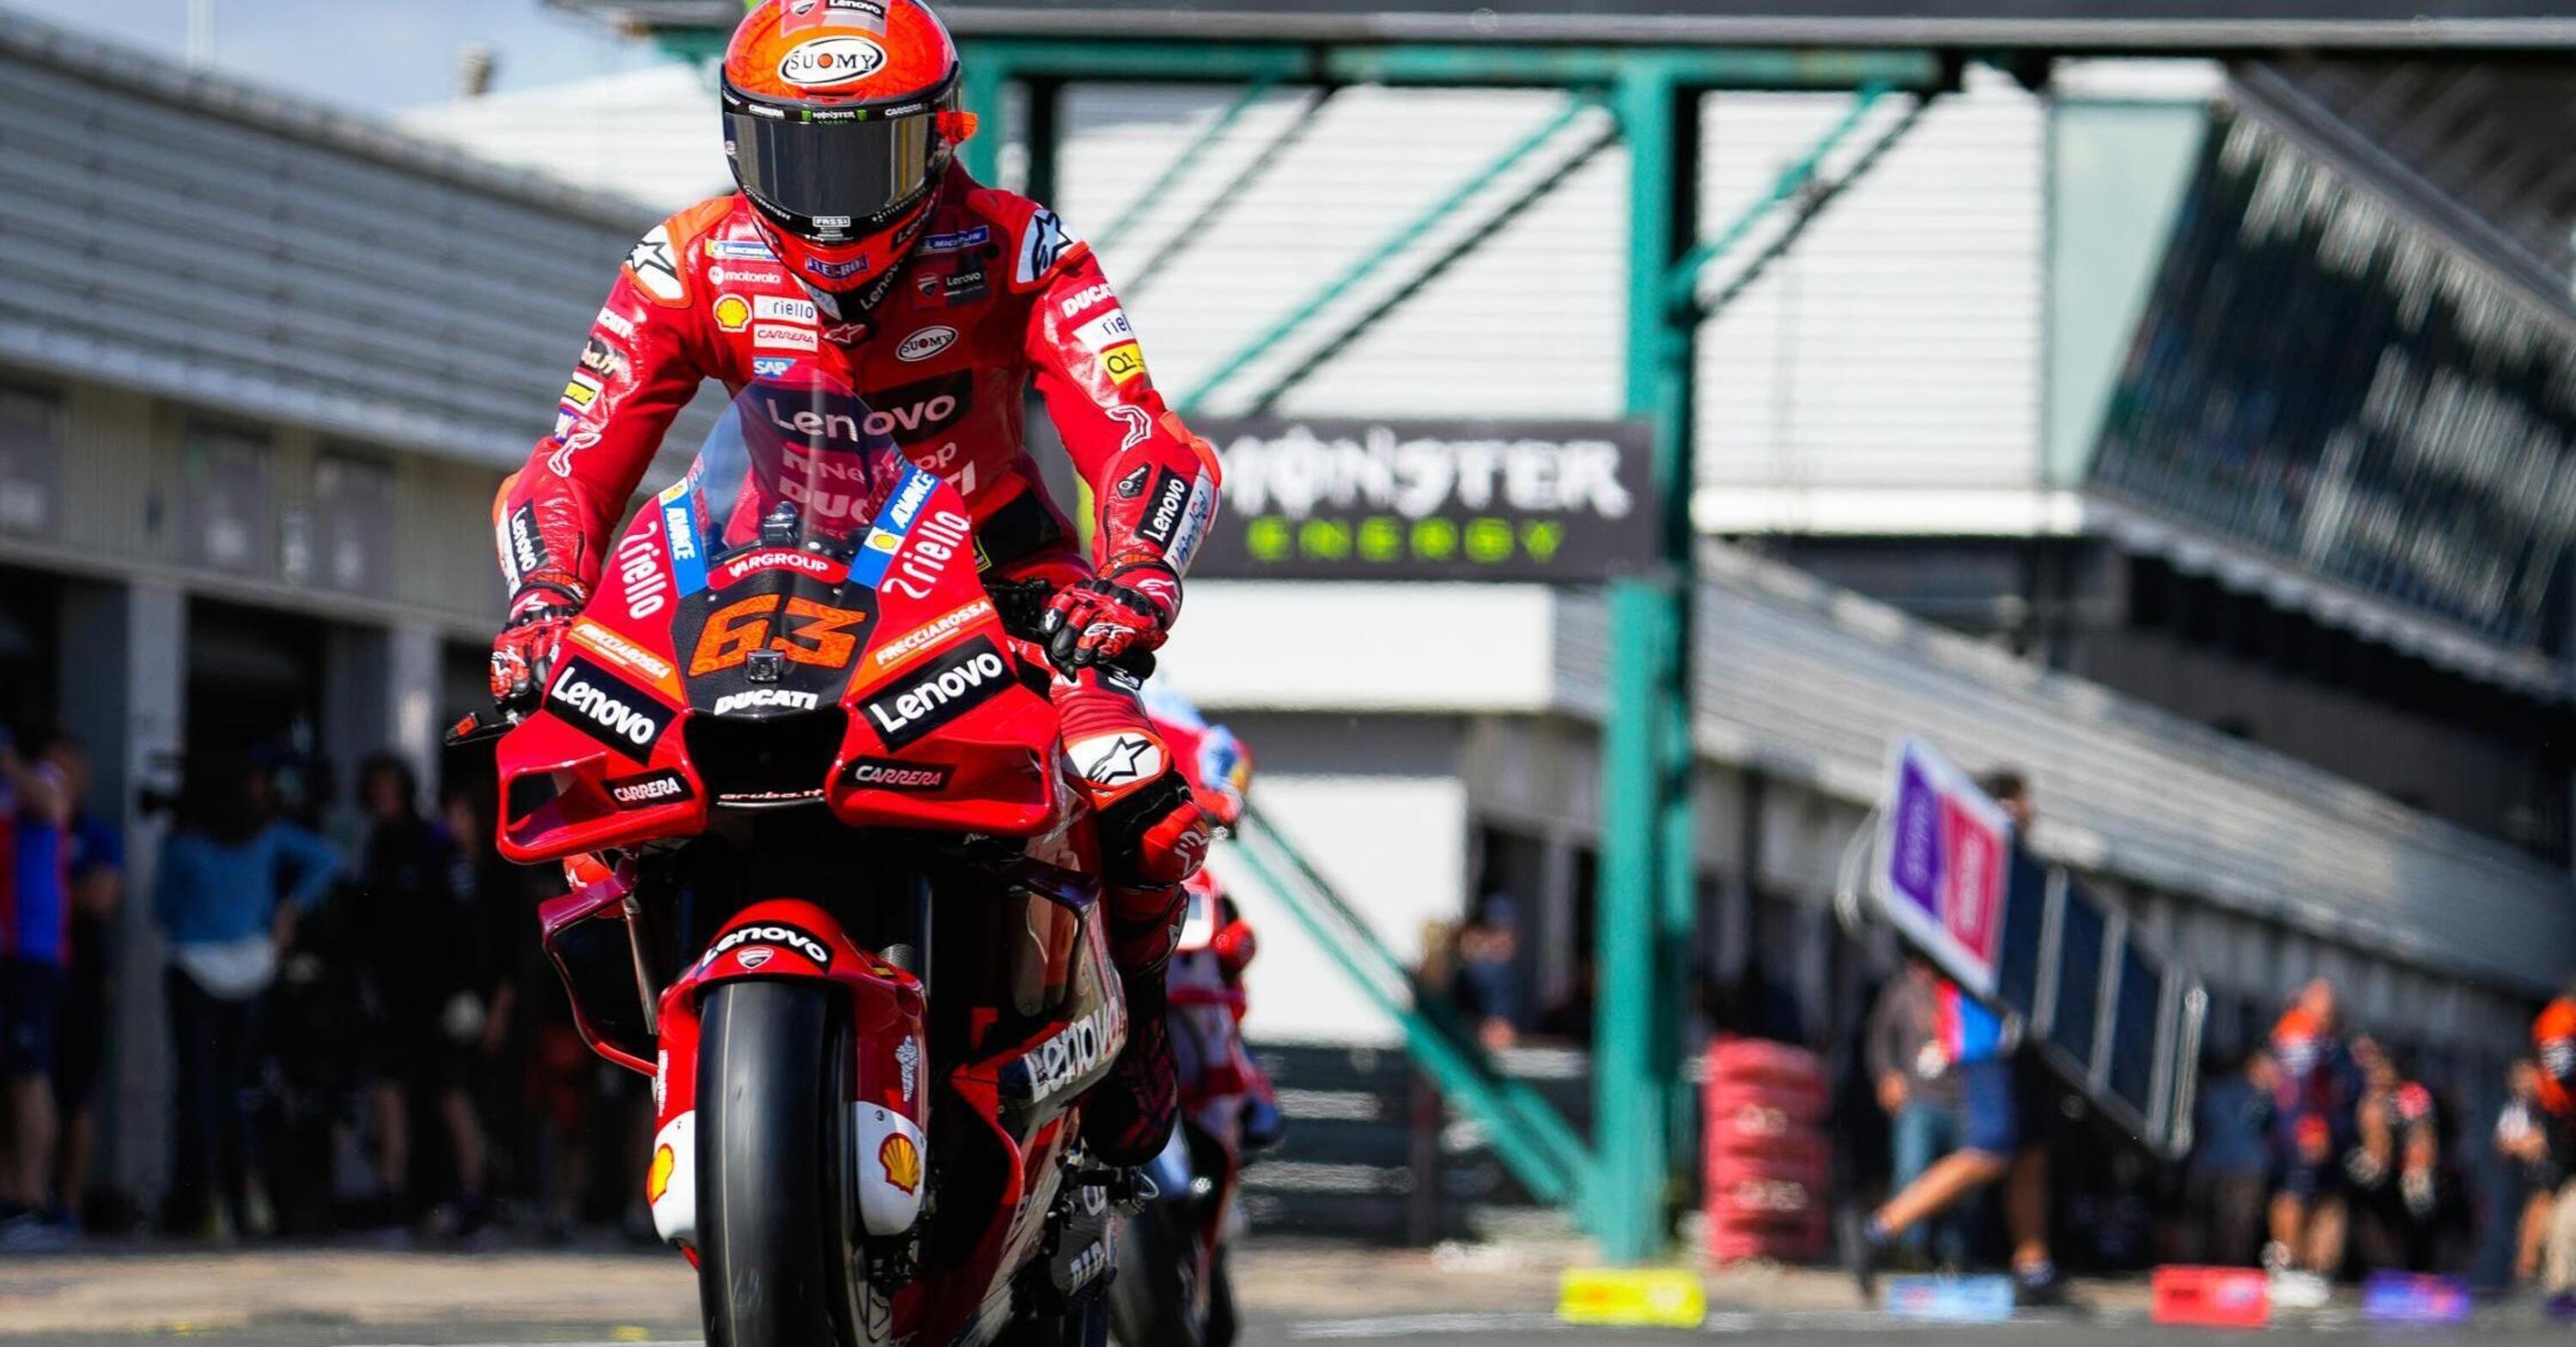 MotoGP 2022. GP du Royaume-Uni à Silverstone, Pecco Bagnaia : "La piste n'est pas facile, nous devons mieux réparer la moto".